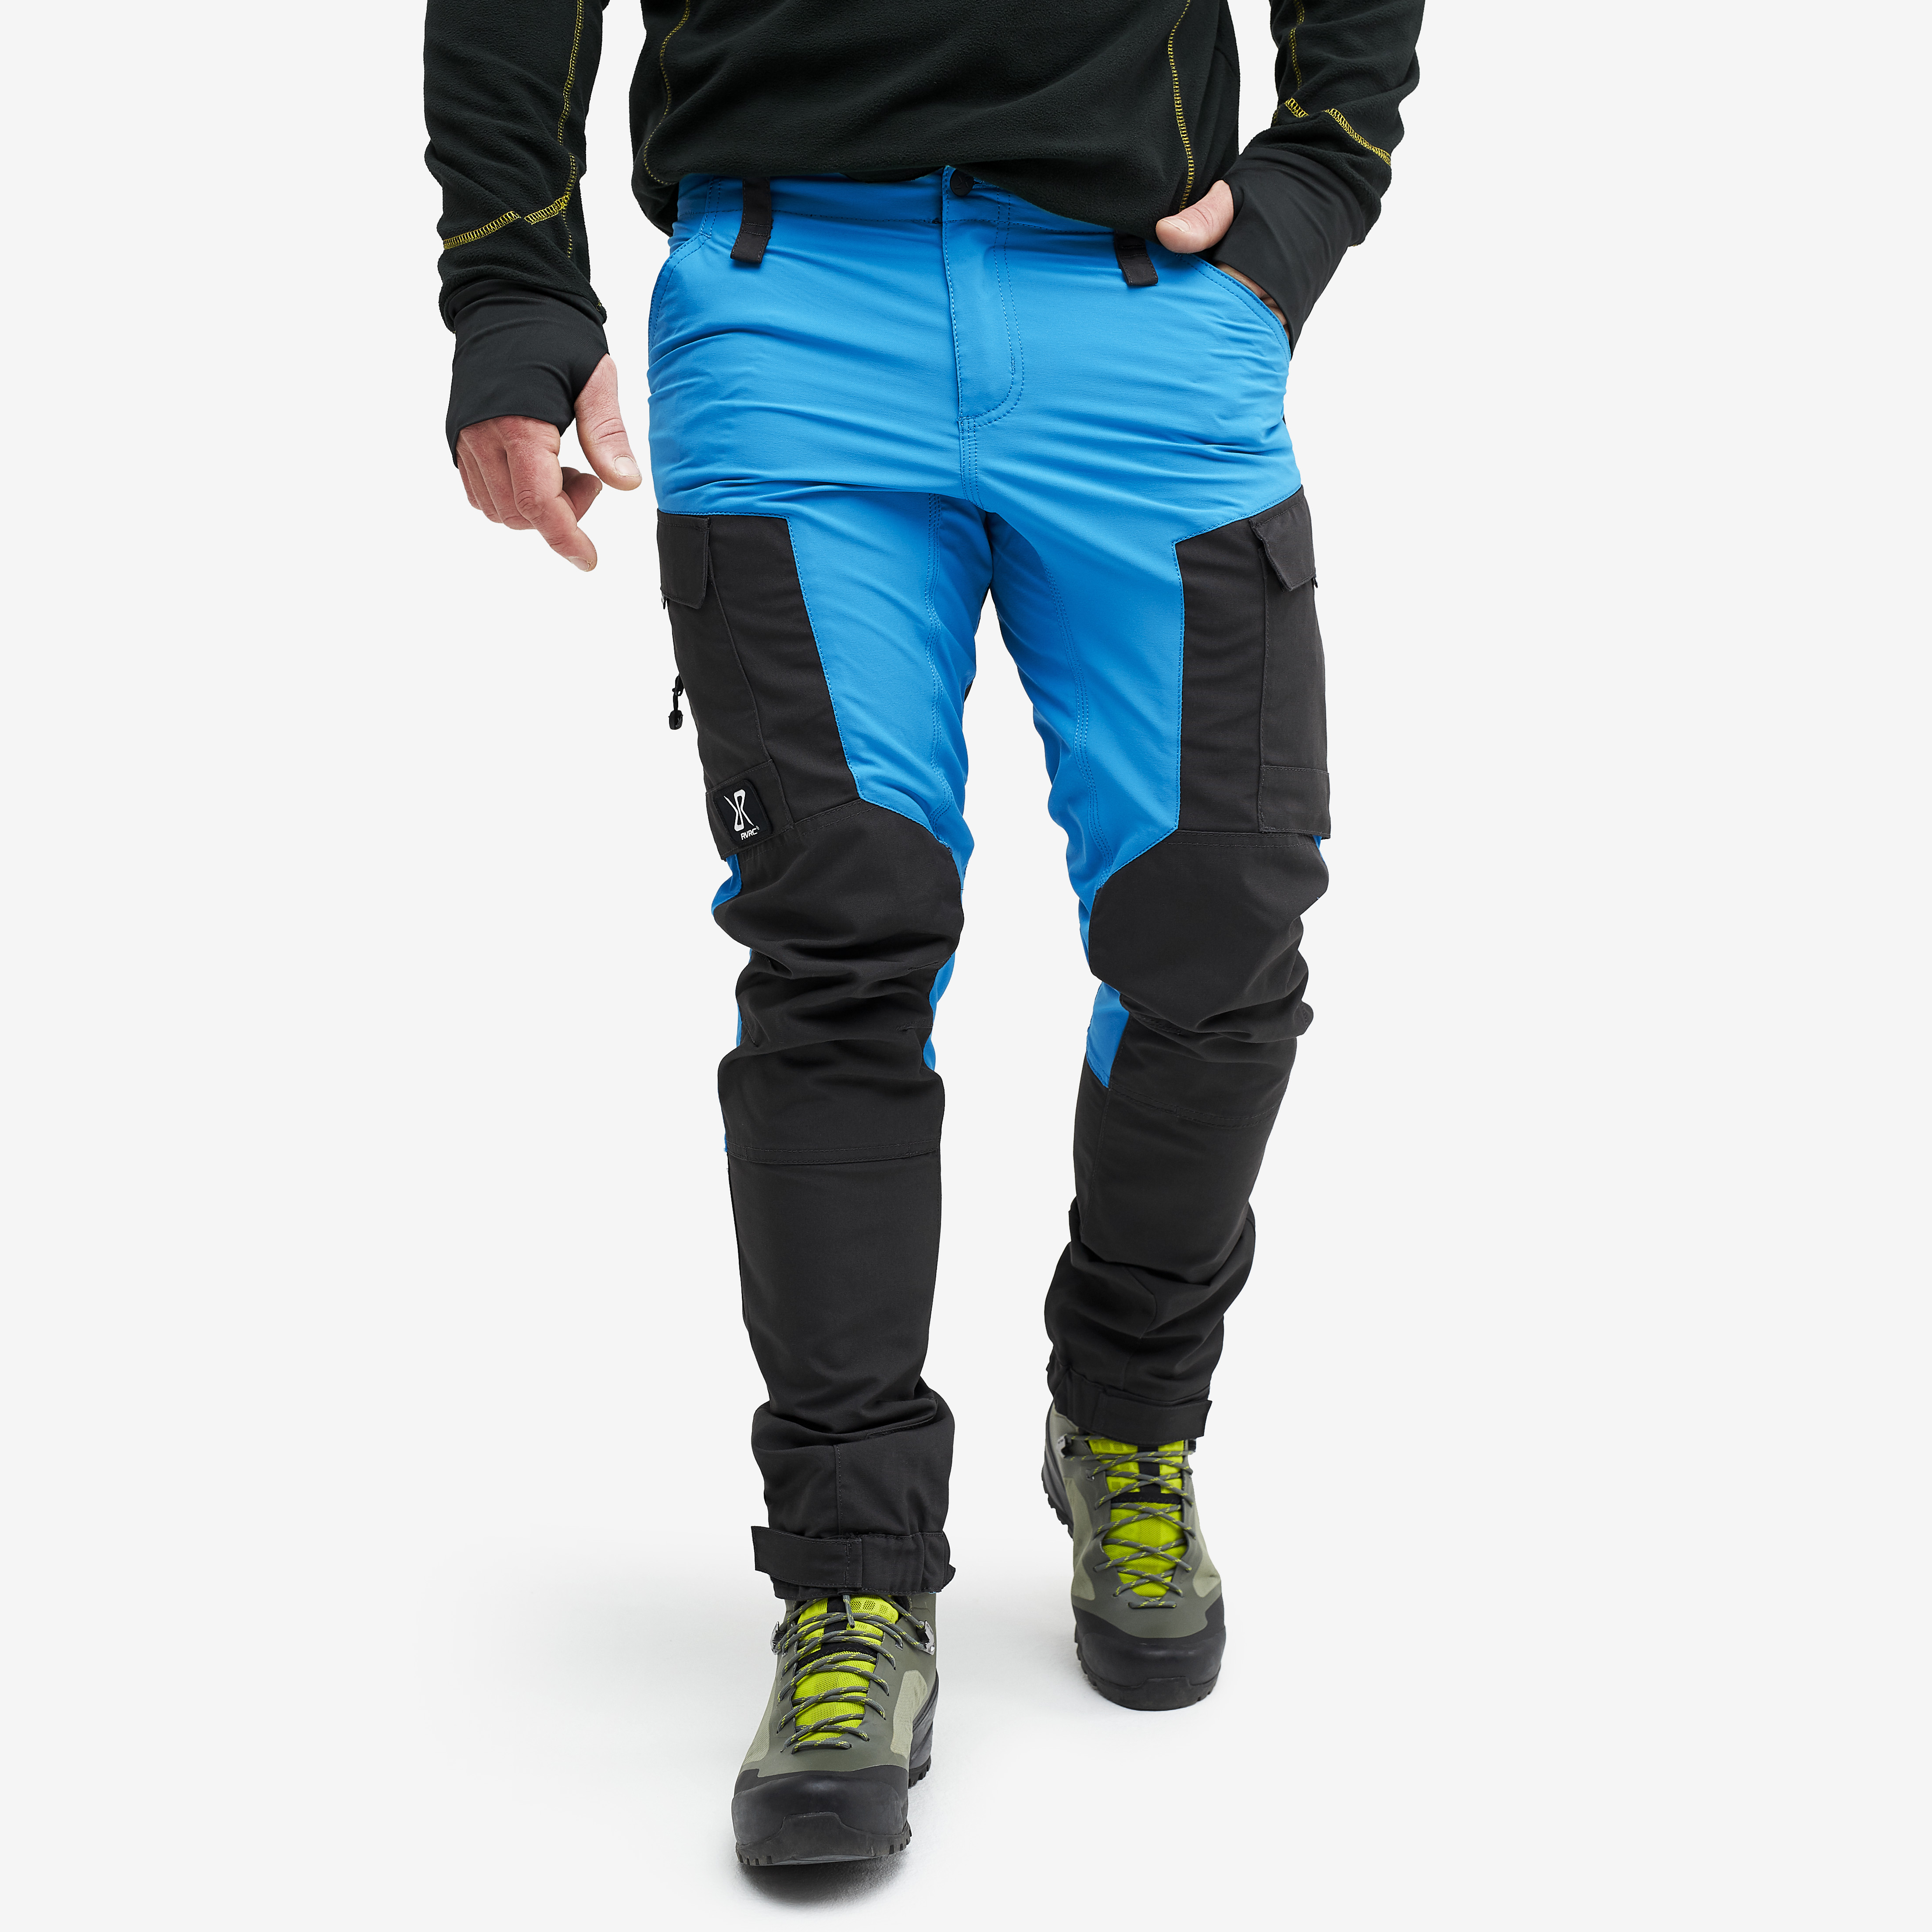 RVRC GP outdoor pants for men in blue